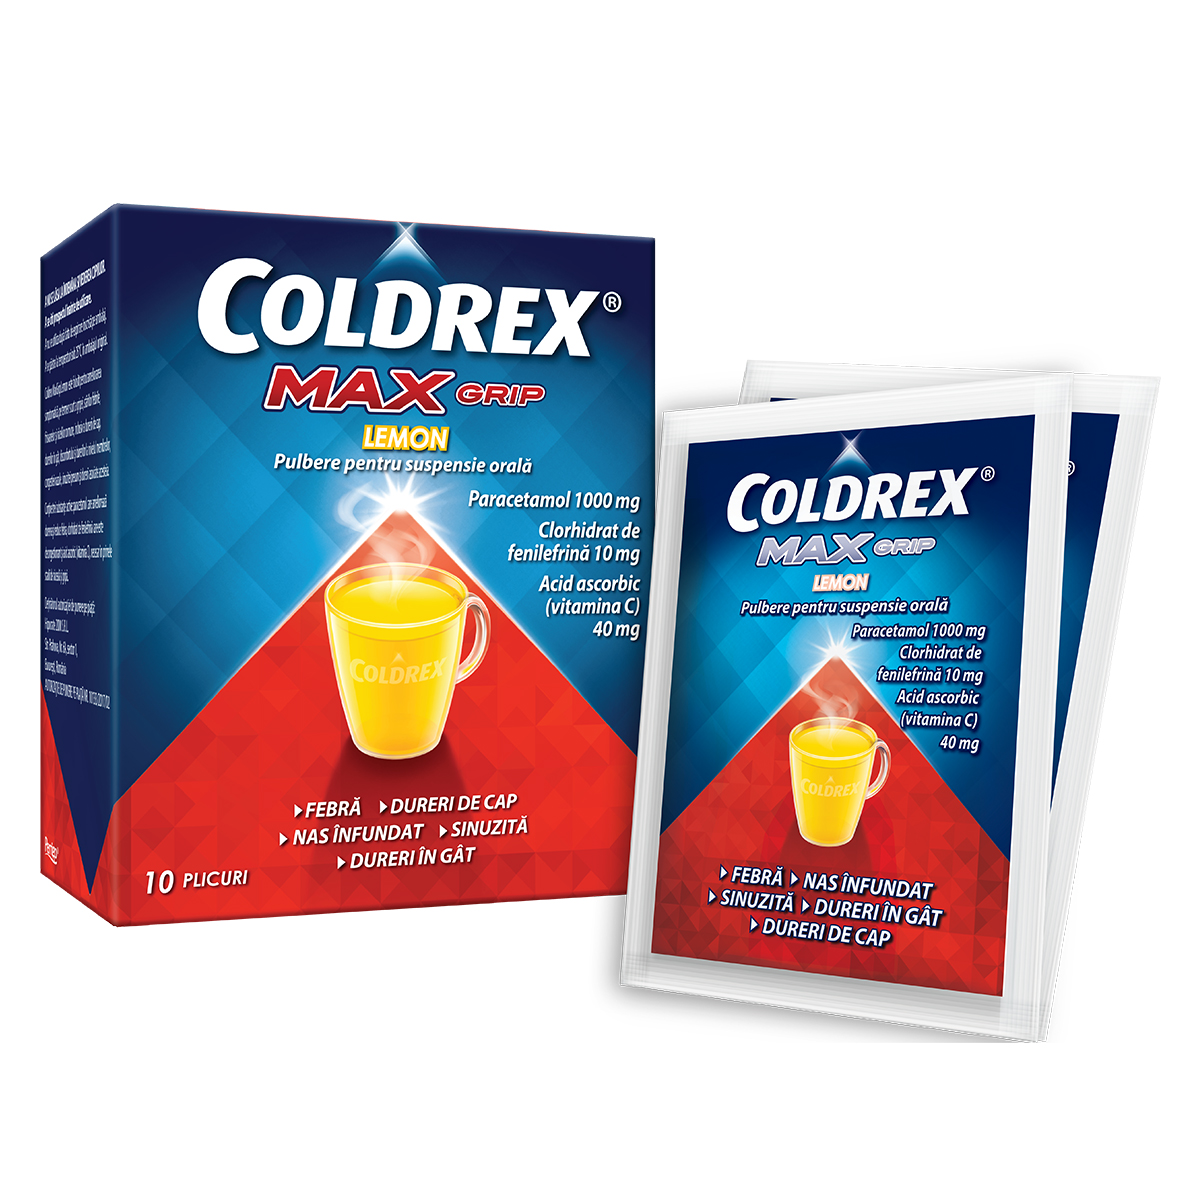 OTC (medicamente care se eliberează fără prescripție medicală) - Coldrex Maxgrip lemon *10p, epastila.ro